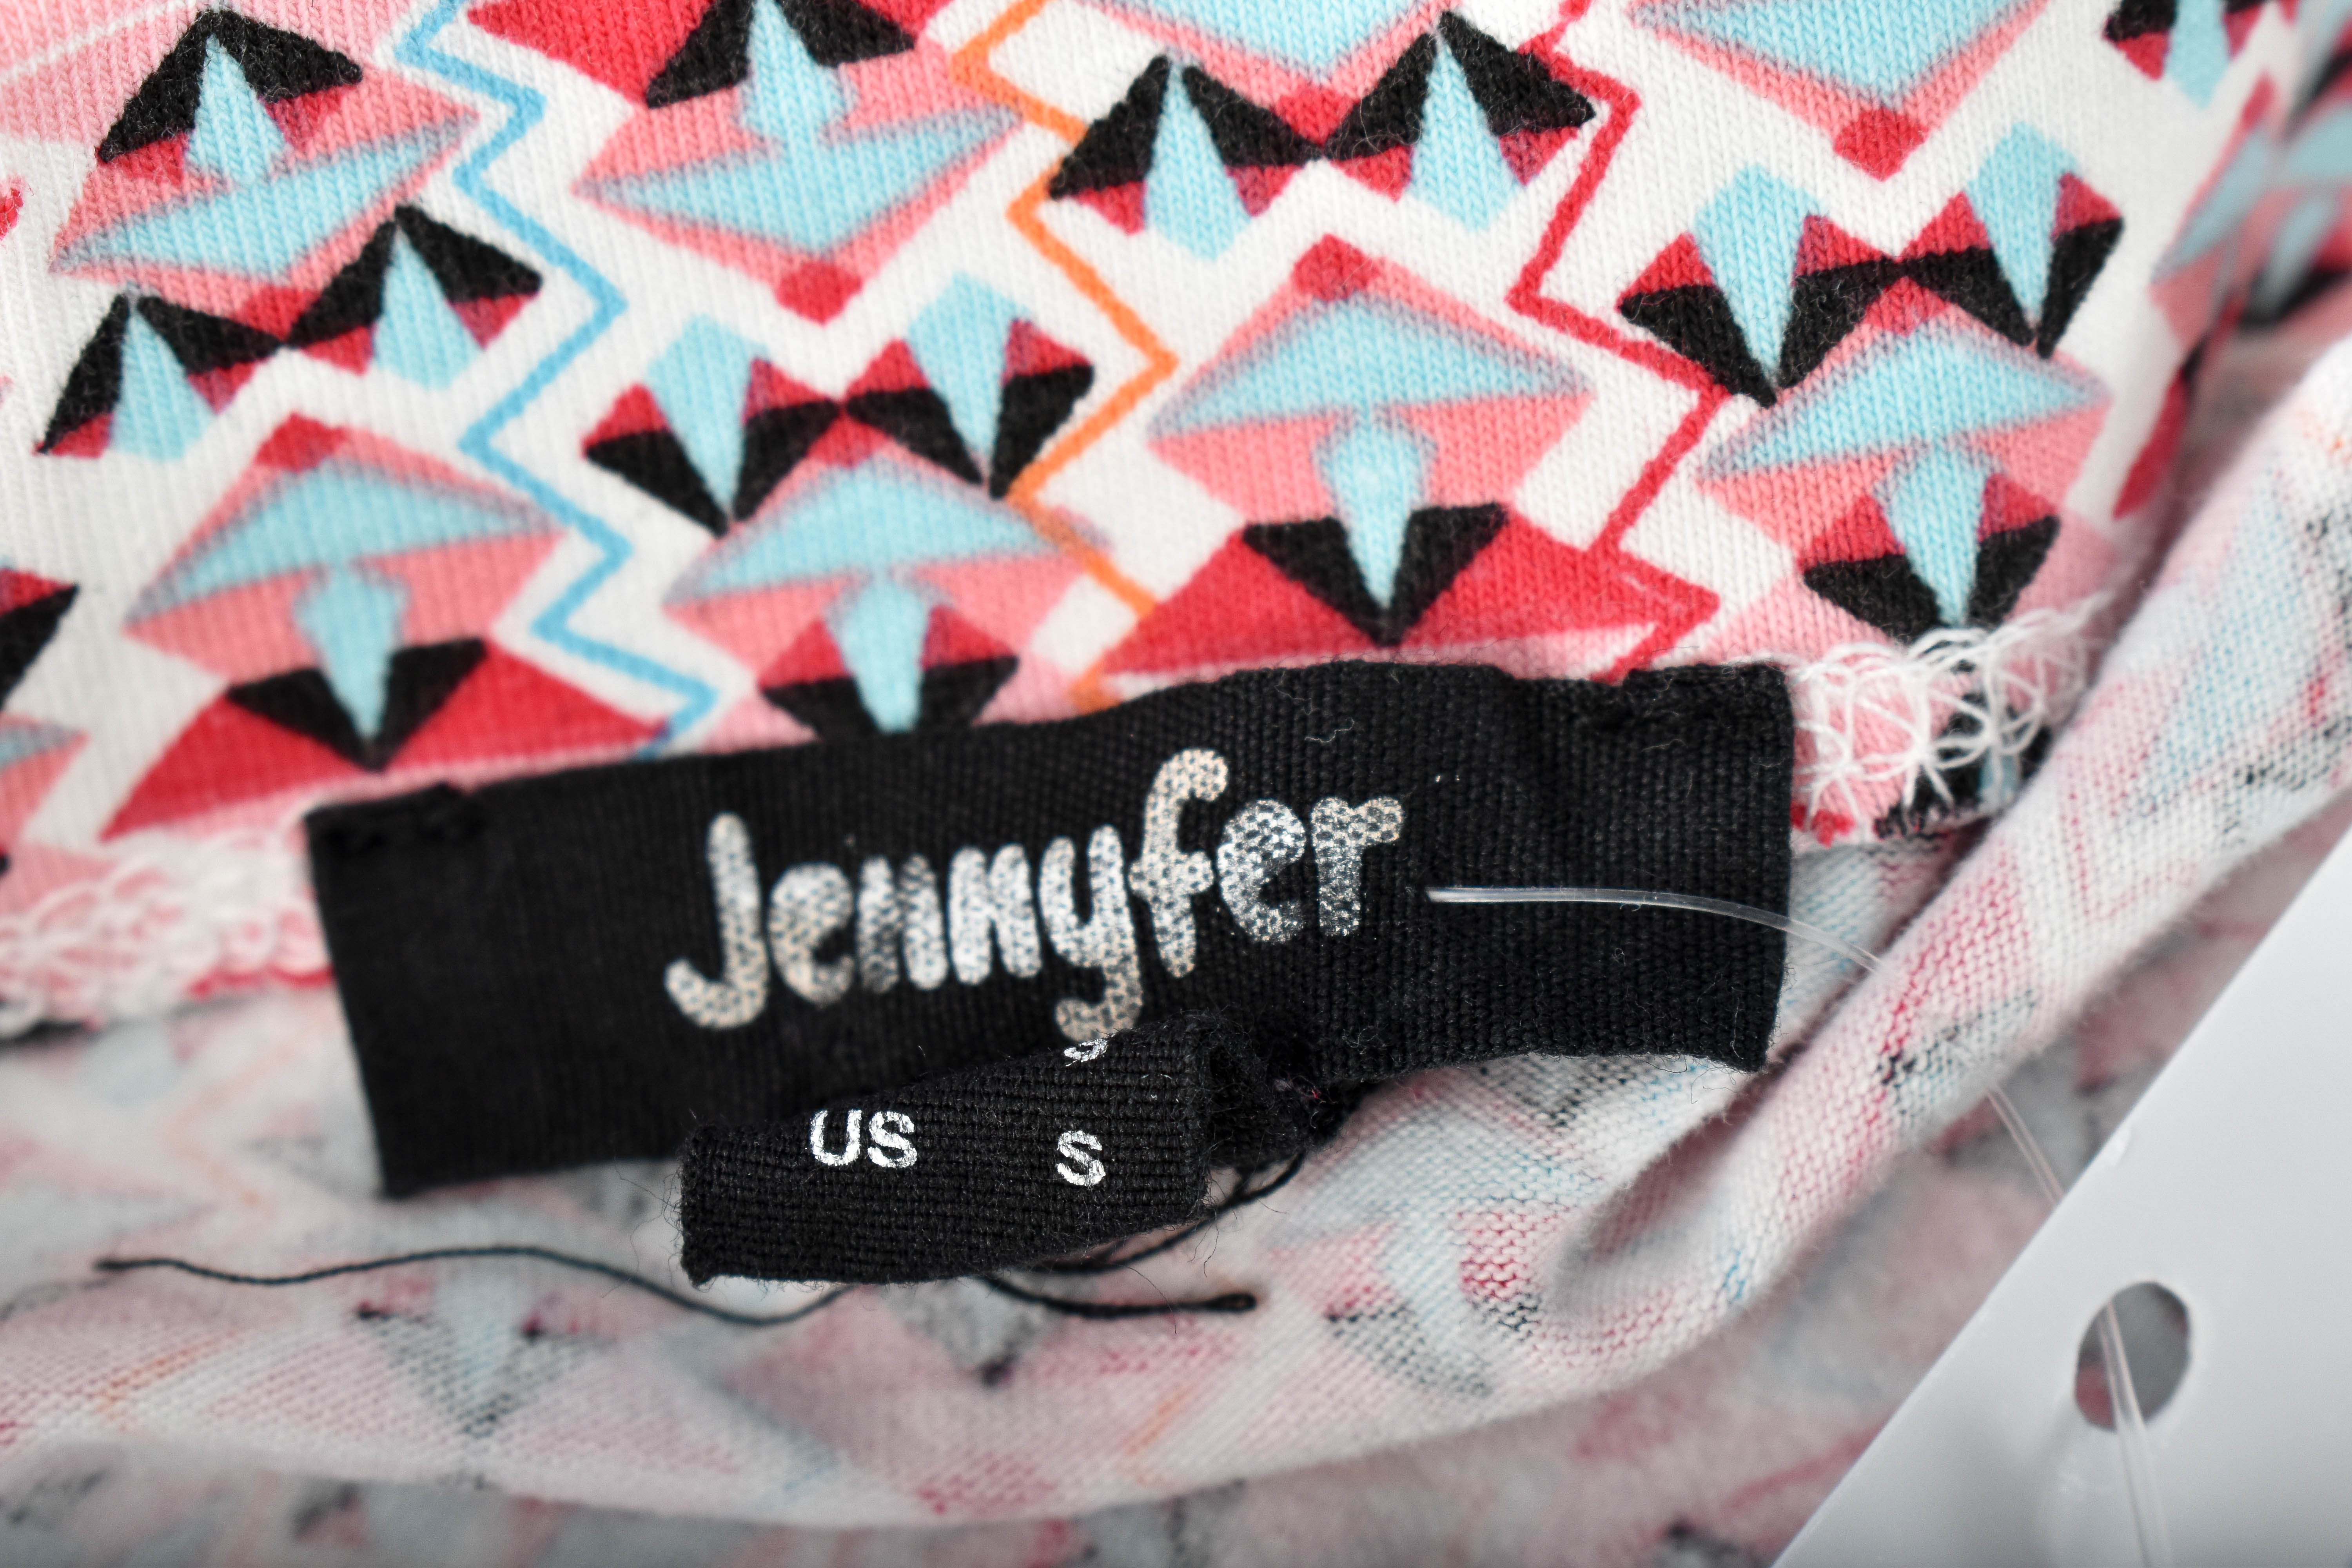 Spódnica - Jennyfer - 2